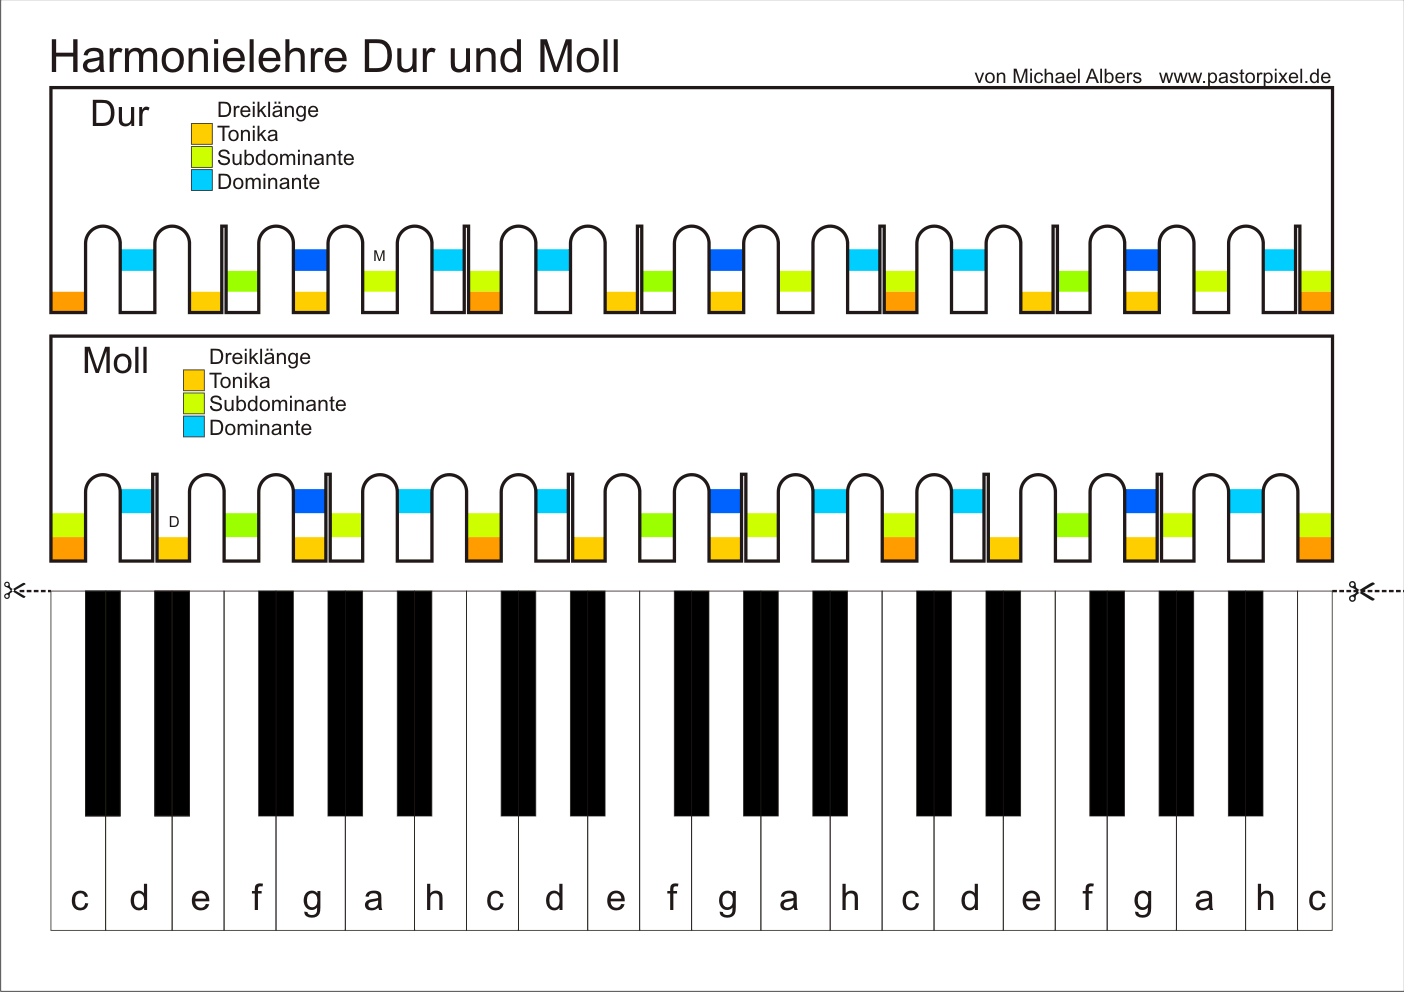 Harmonielehre Dur Moll